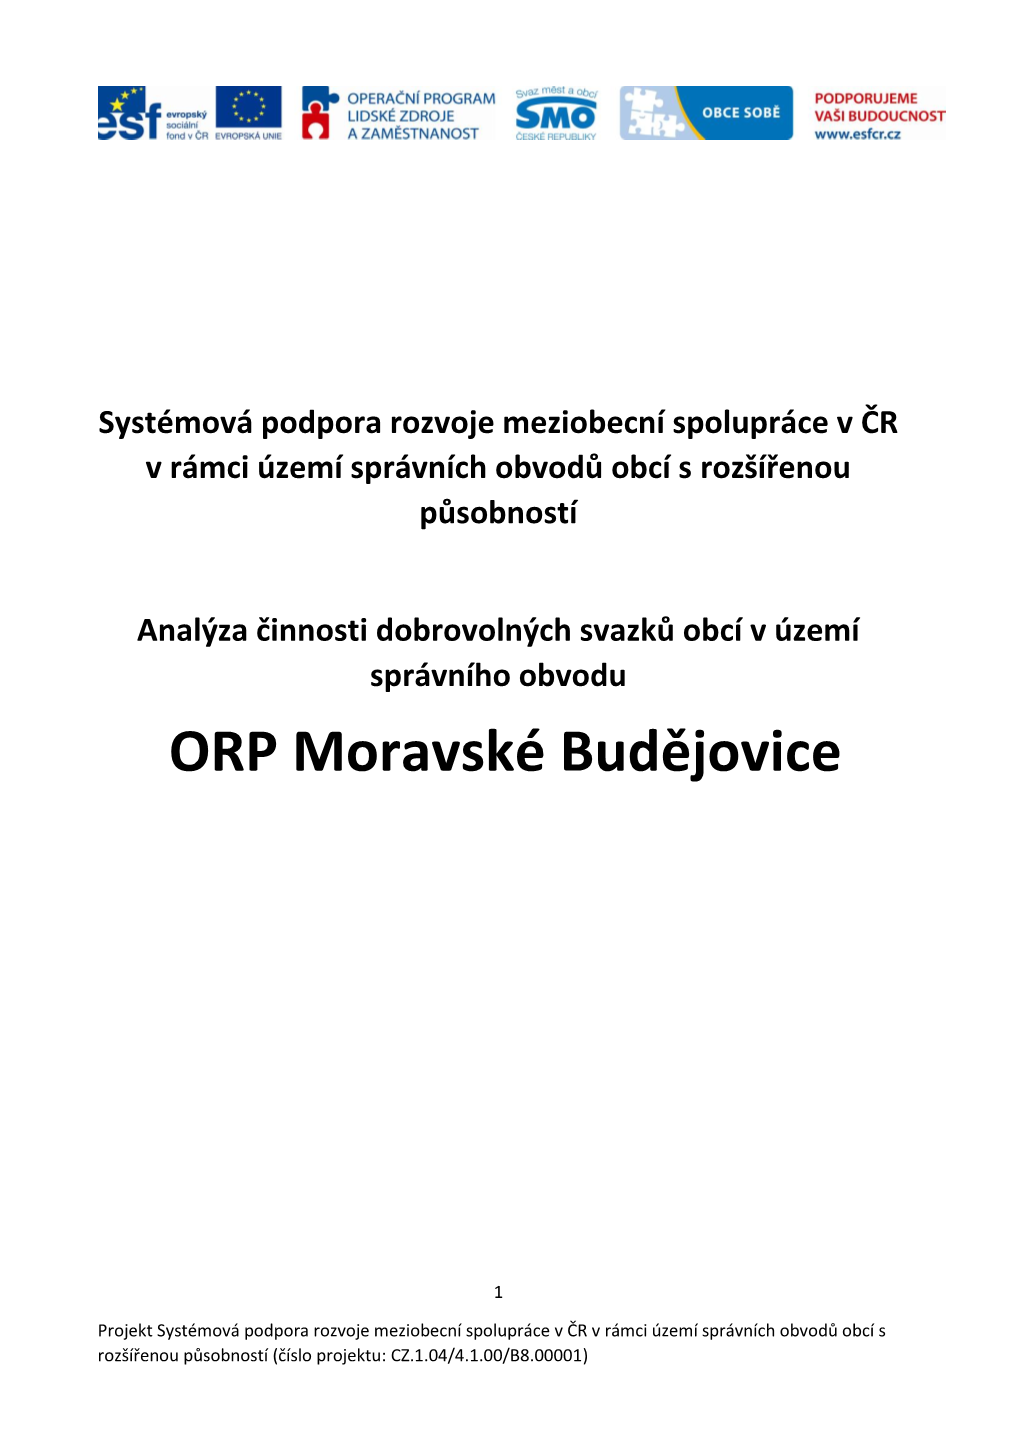 ORP Moravské Budějovice